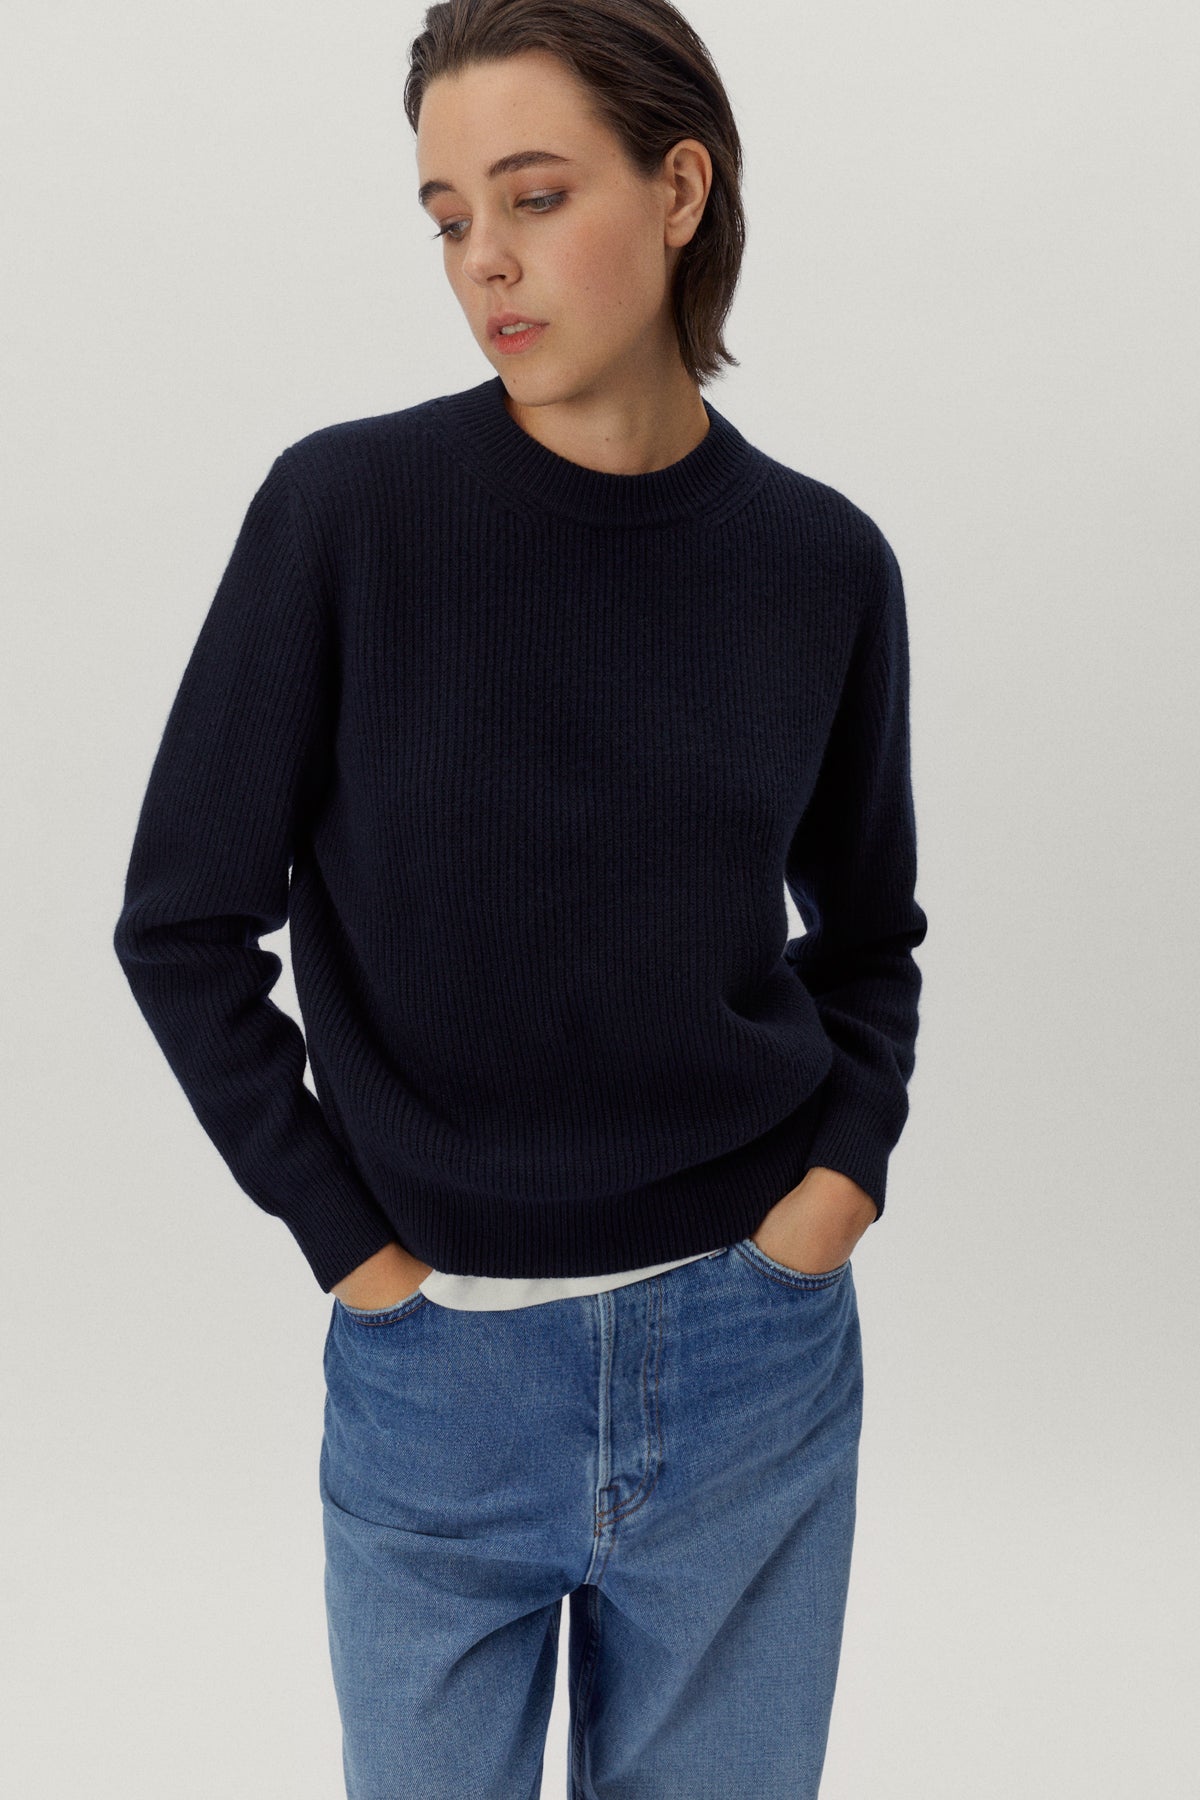 the woolen perkins sweater 2 blue navy